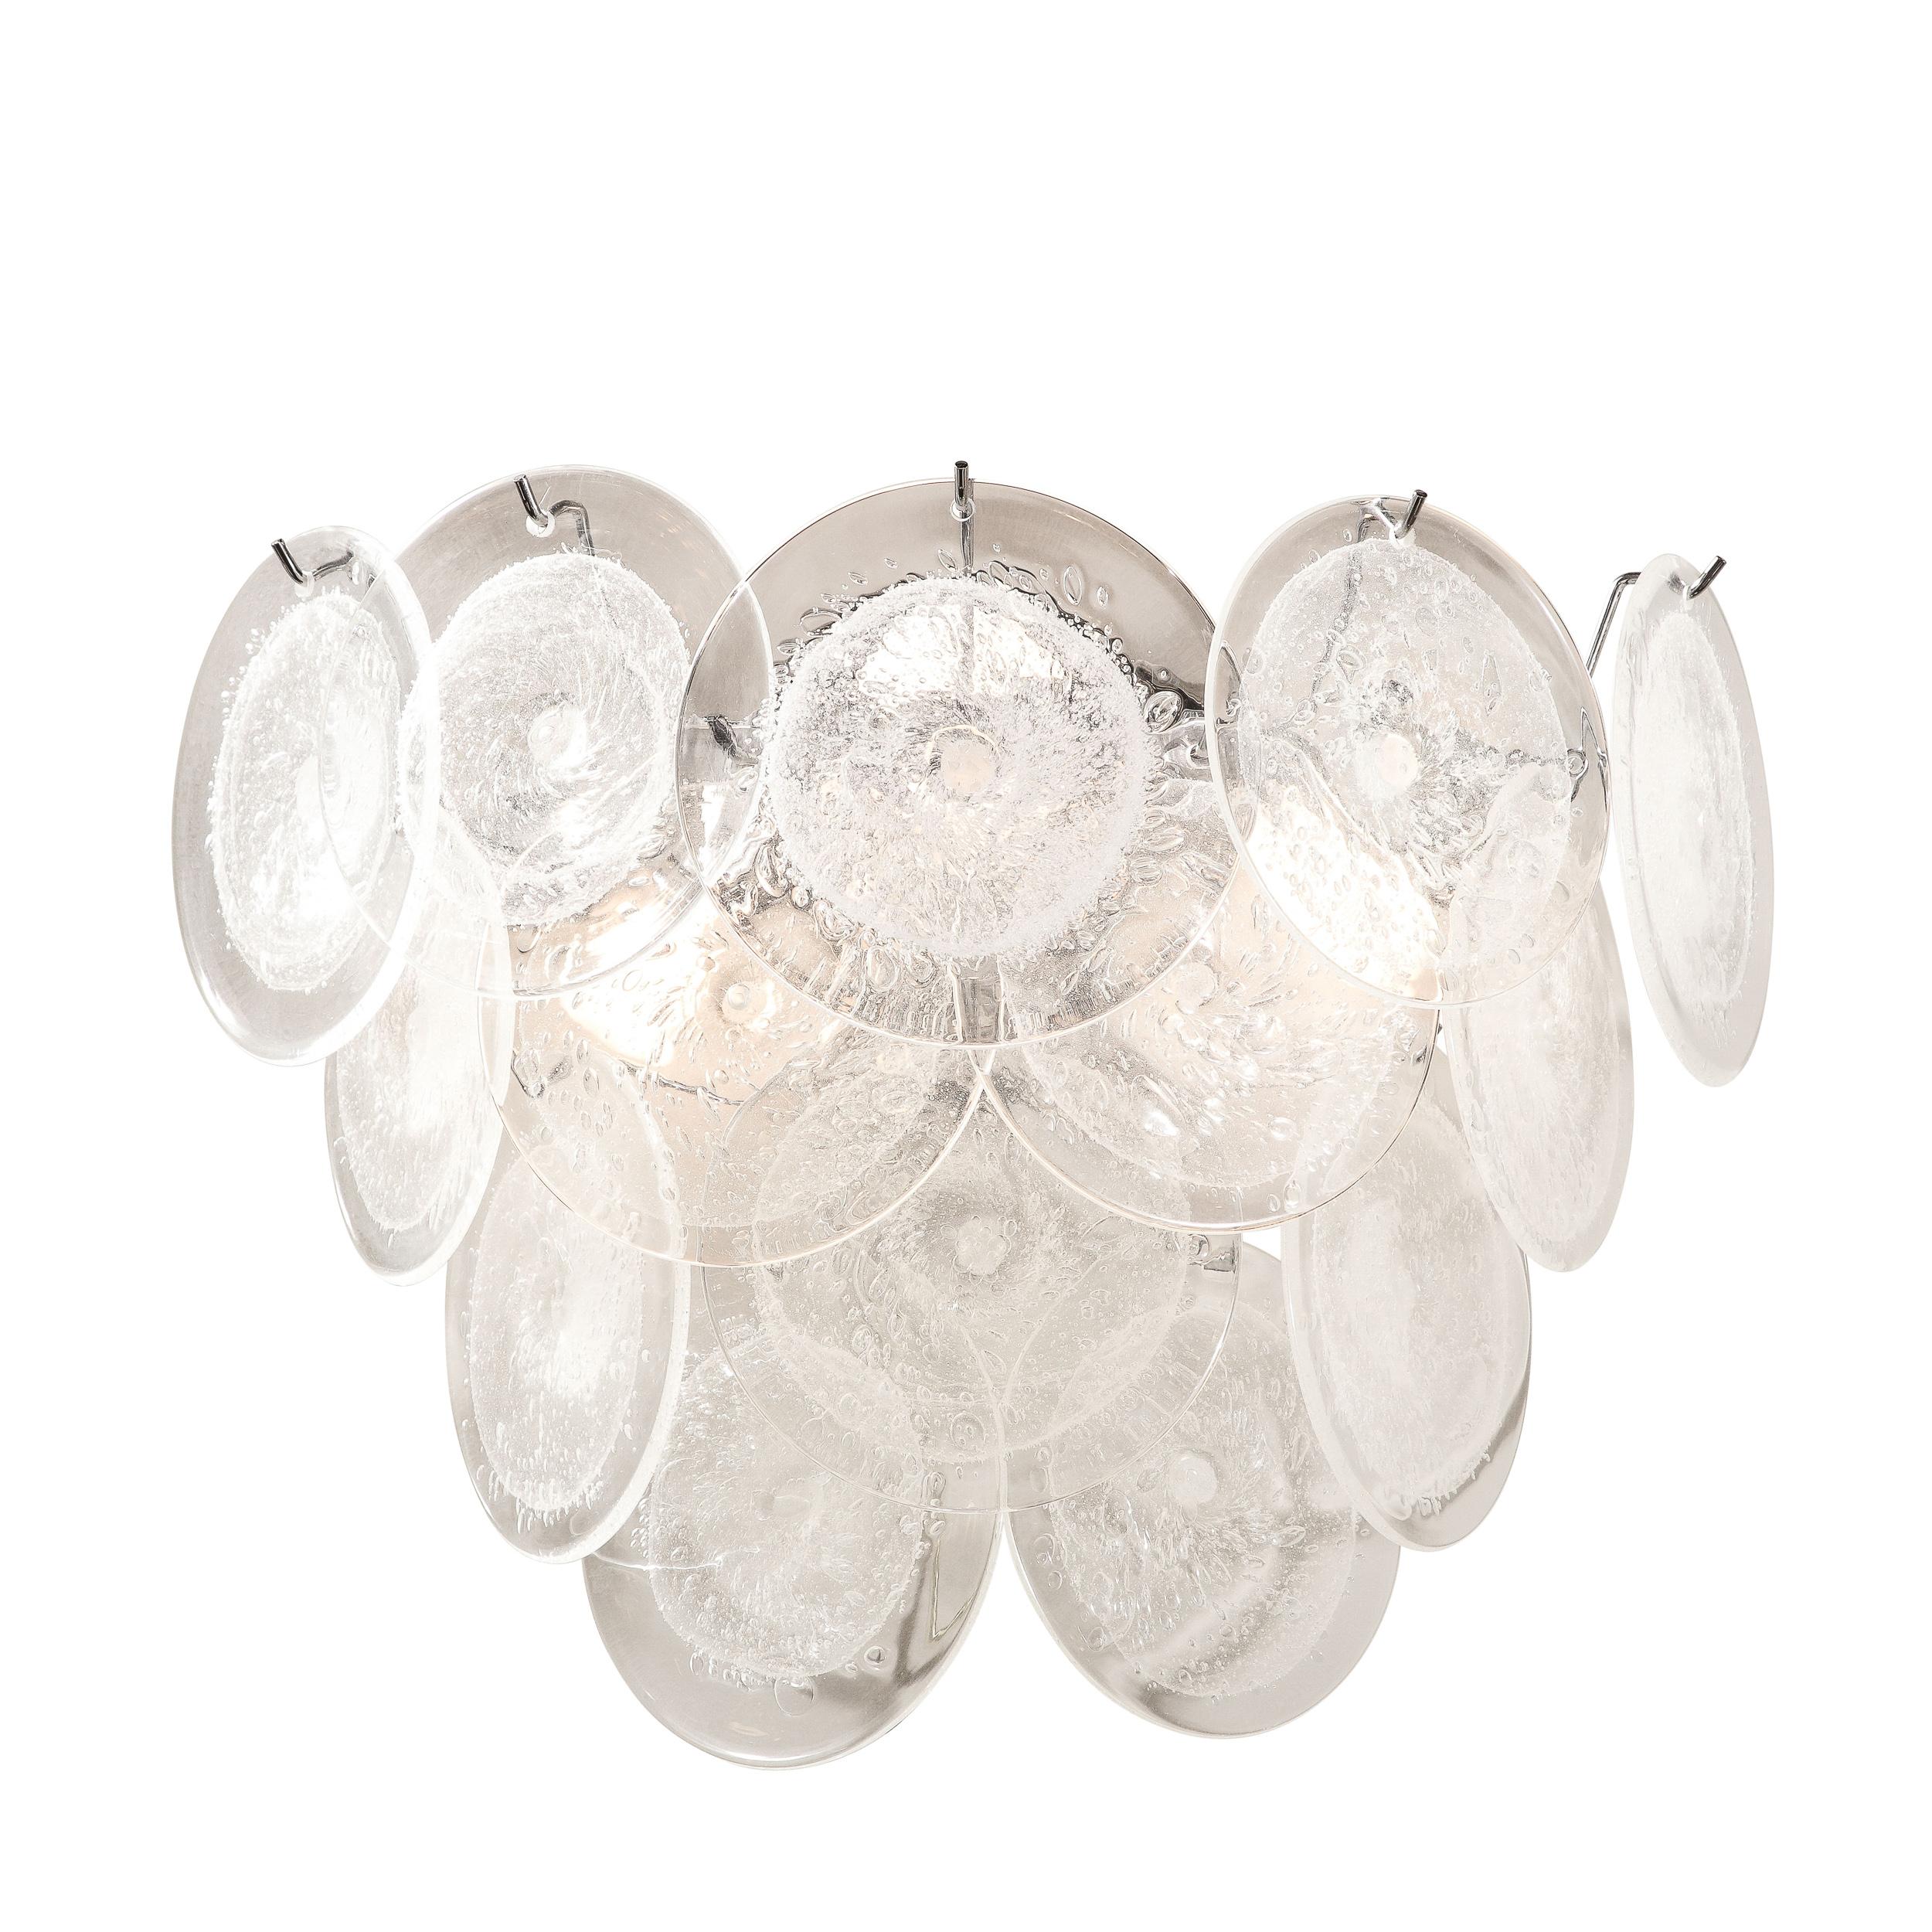 Dieses schöne und zeitlose Paar modernistischer 14-Scheiben-Leuchten wurde in Murano, Italien, mundgeblasen - der Insel vor der Küste Venedigs, die seit Jahrhunderten für ihre hervorragende Glasproduktion bekannt ist. Die nach dem Vorbild von